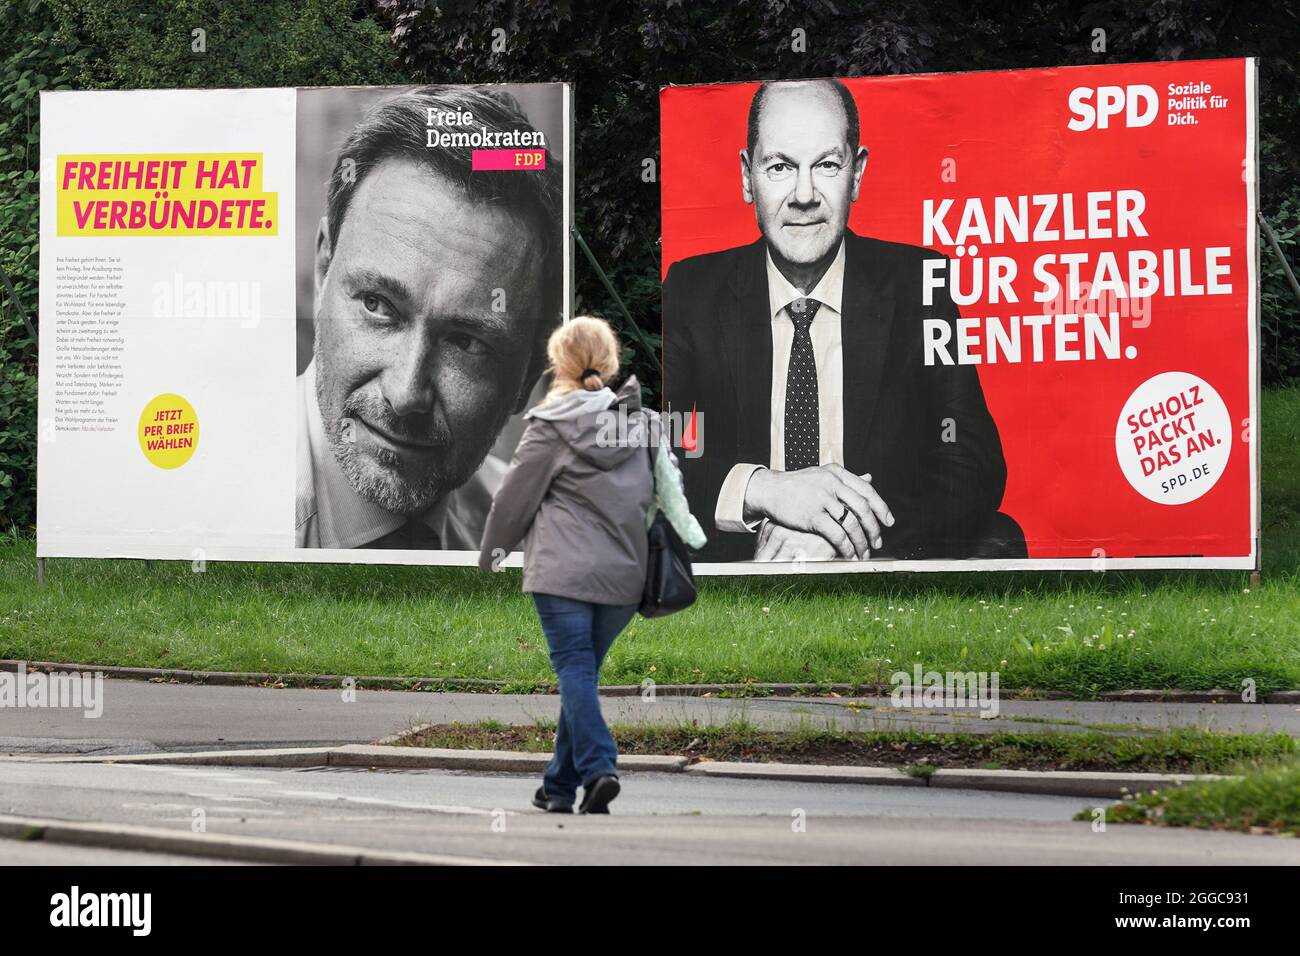 Bundestagswahl 2021, Wahlplakate der Parteien zur Bundestagswahl am 26.9.2021: FDP (Christian Lindner) e SPD (OLAF Scholz). Dortmund, 30.08.2021 Foto Stock